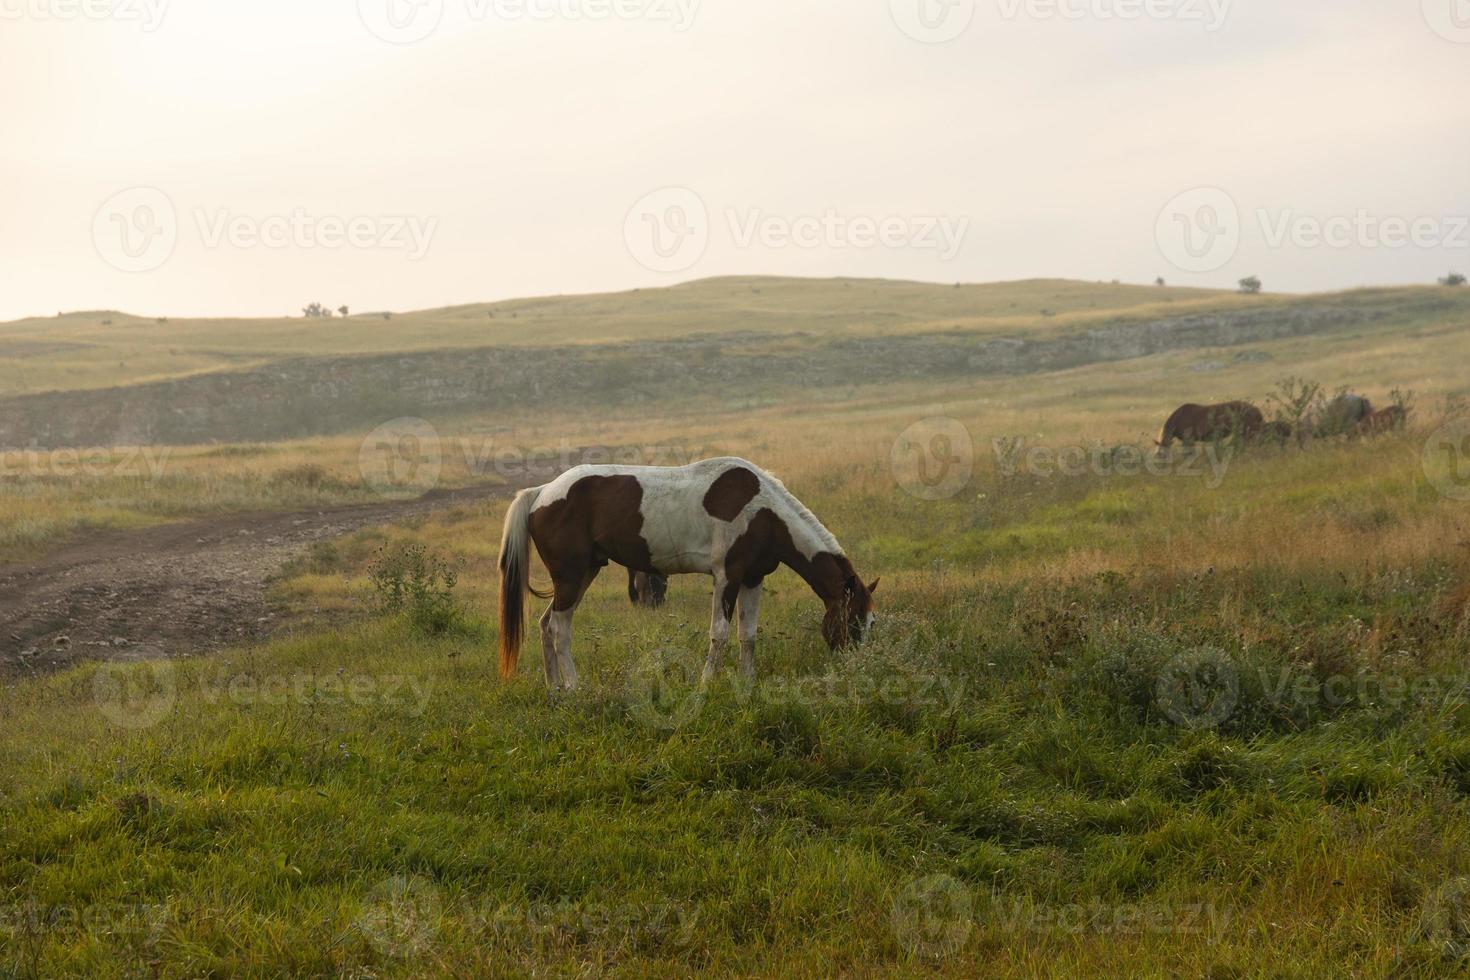 cavallo maculato americano con macchie marroni e bianche al pascolo. foto